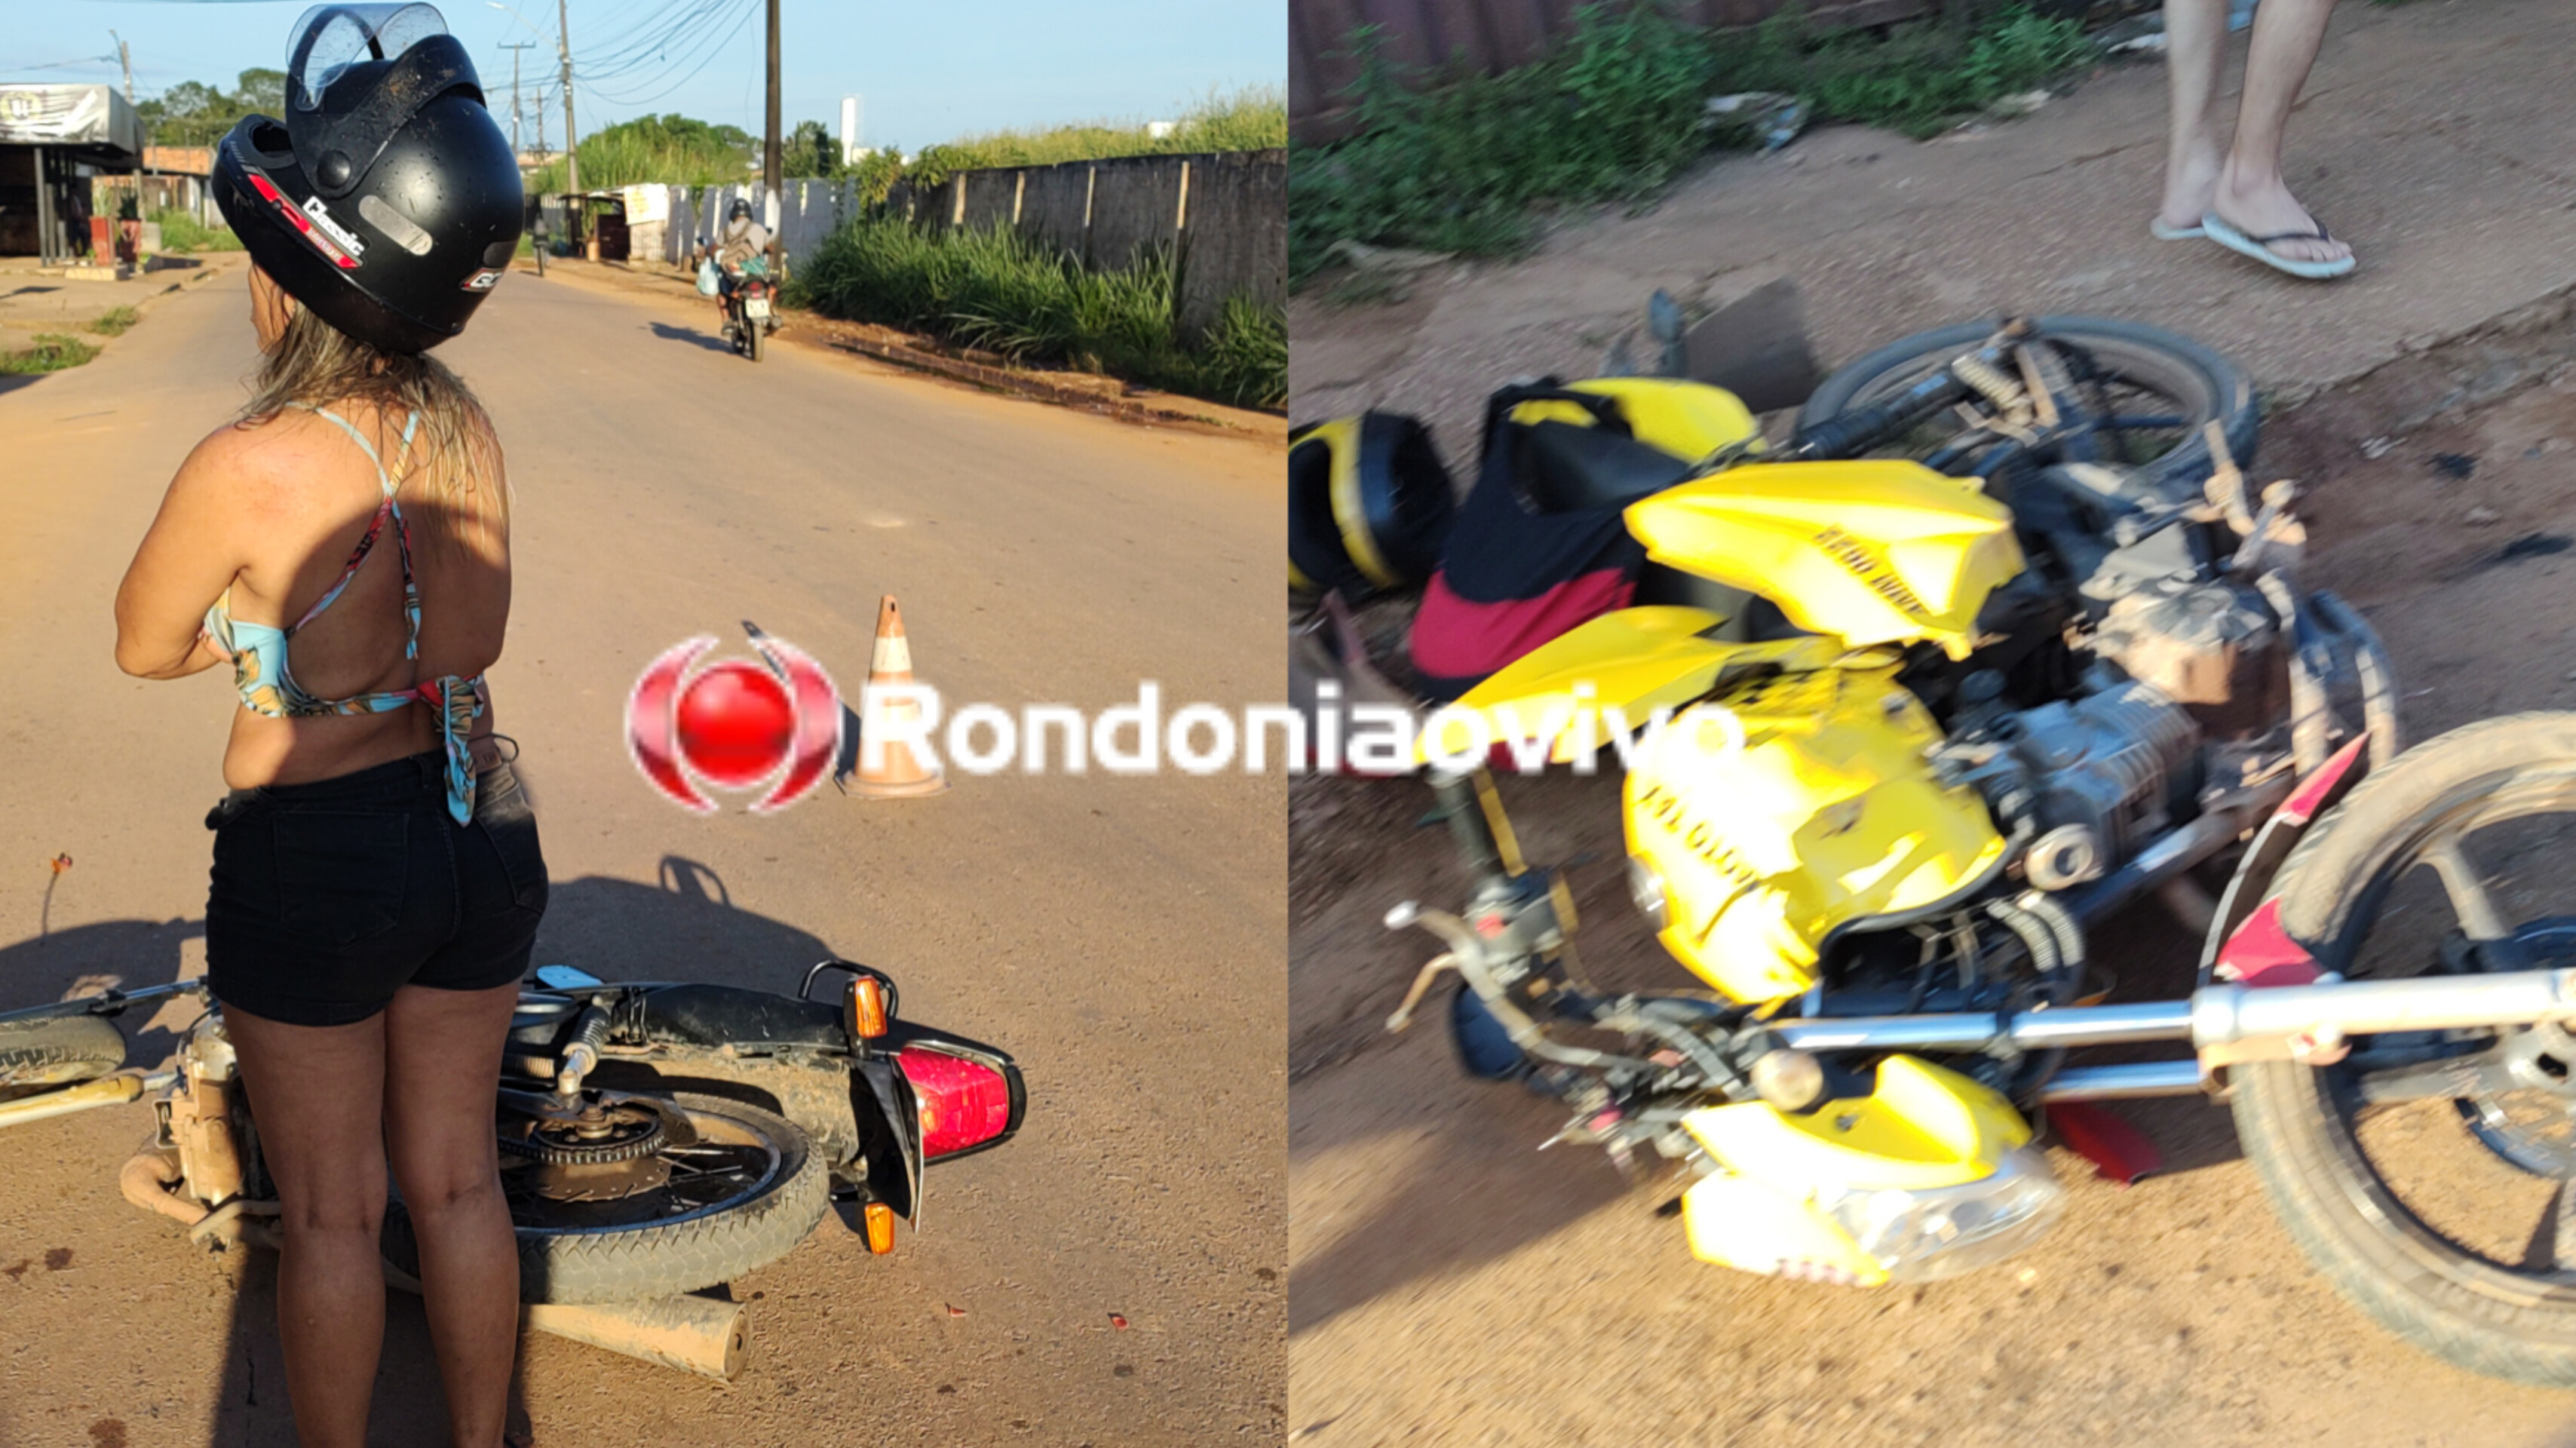 URGENTE: Mulher embriagada causa grave acidente com mototaxista 